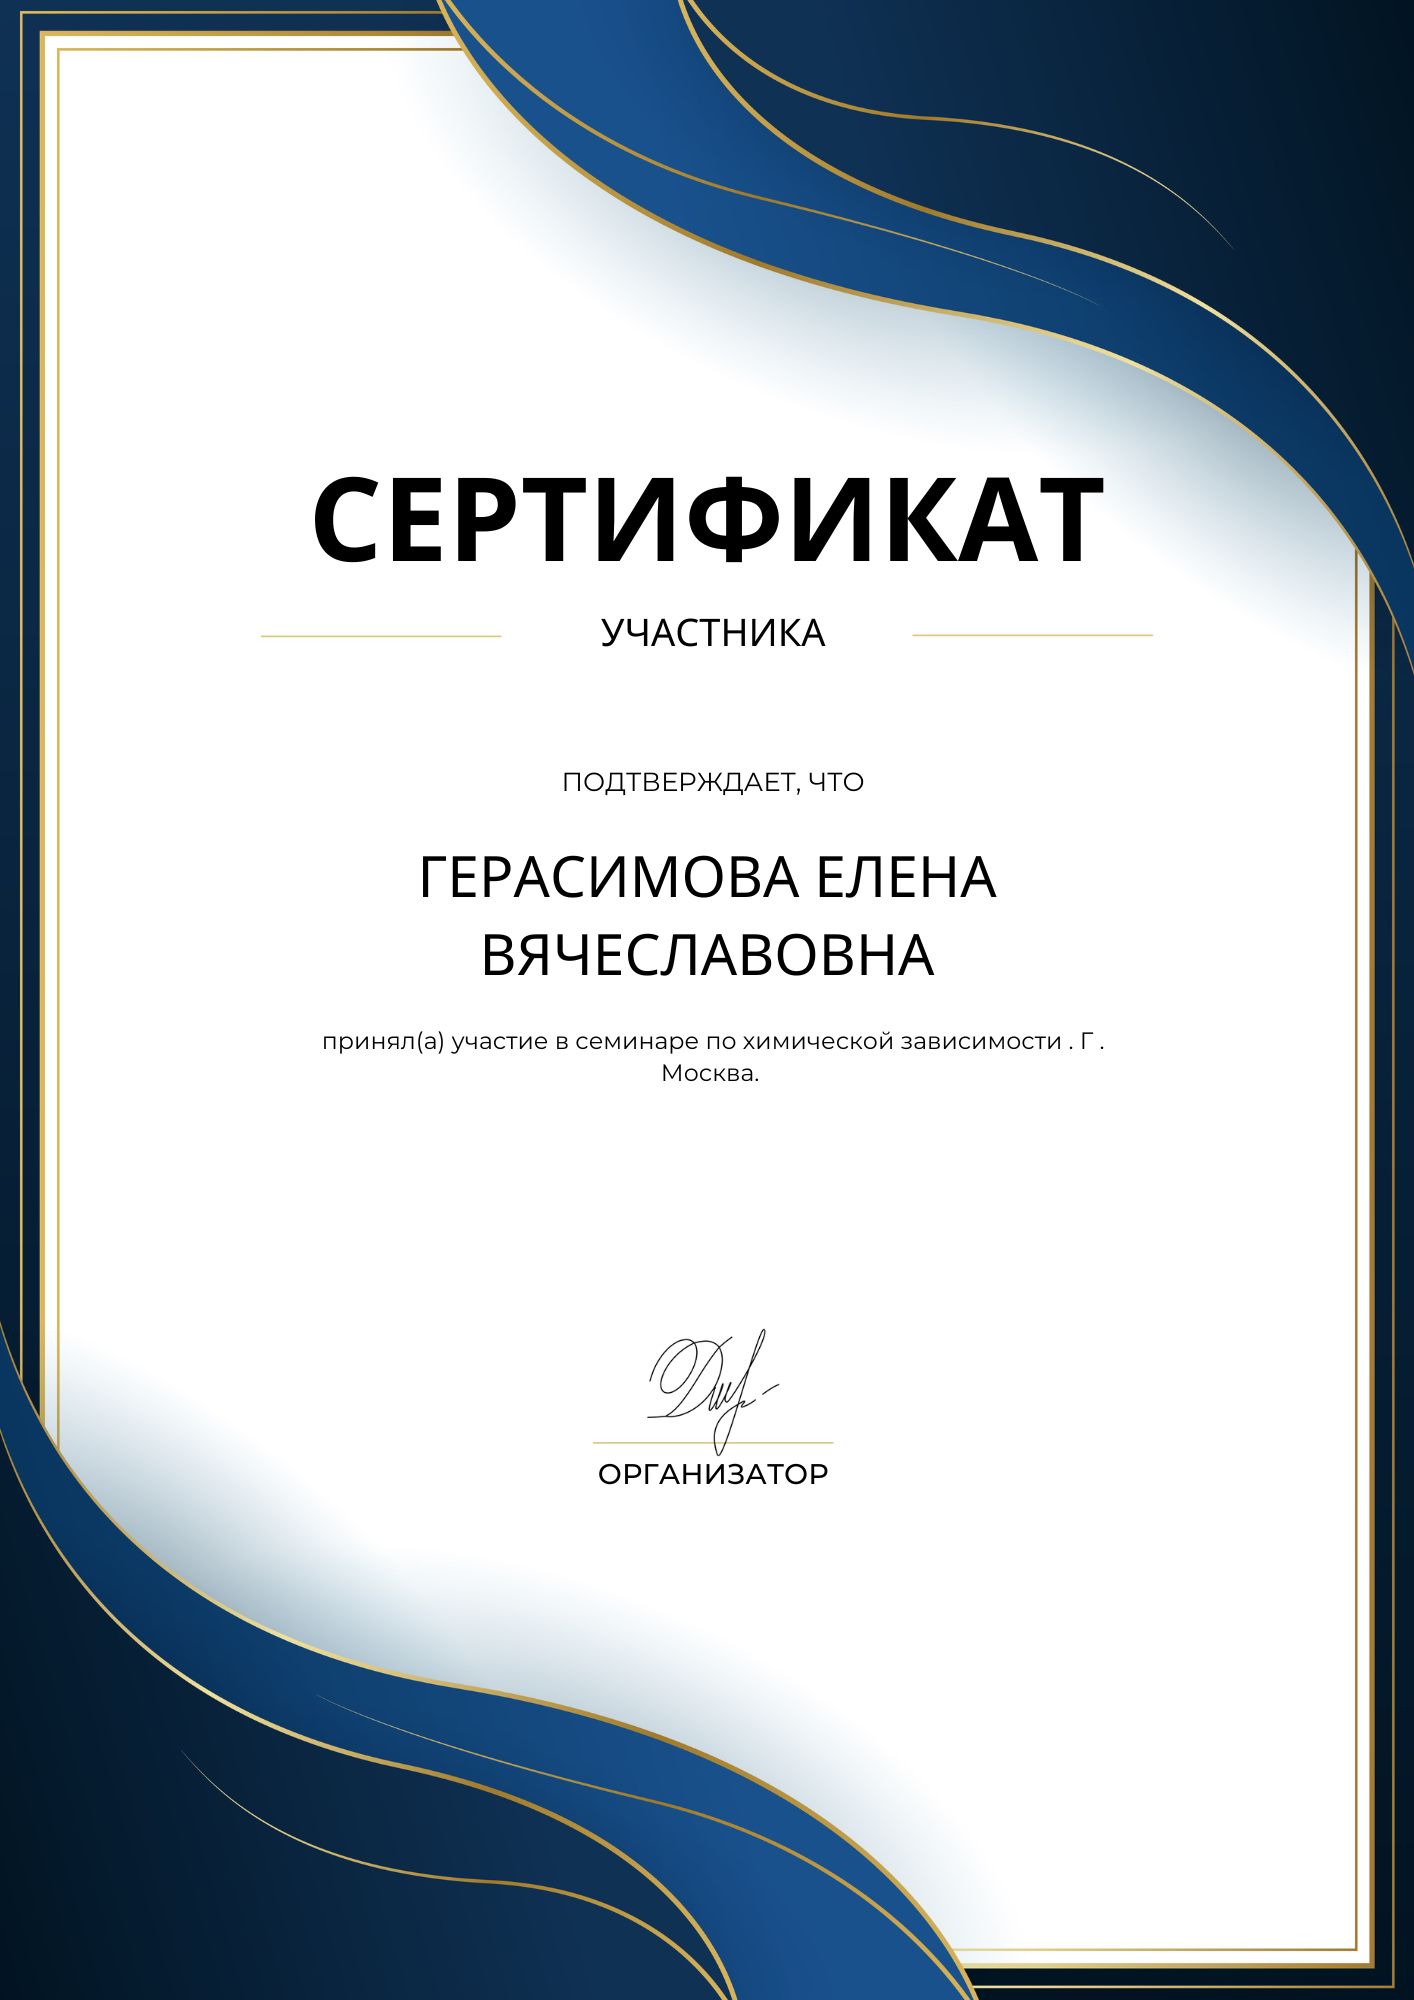 Фотография сертификата Герасимовой Елены Вячеславовны за участия в семинаре